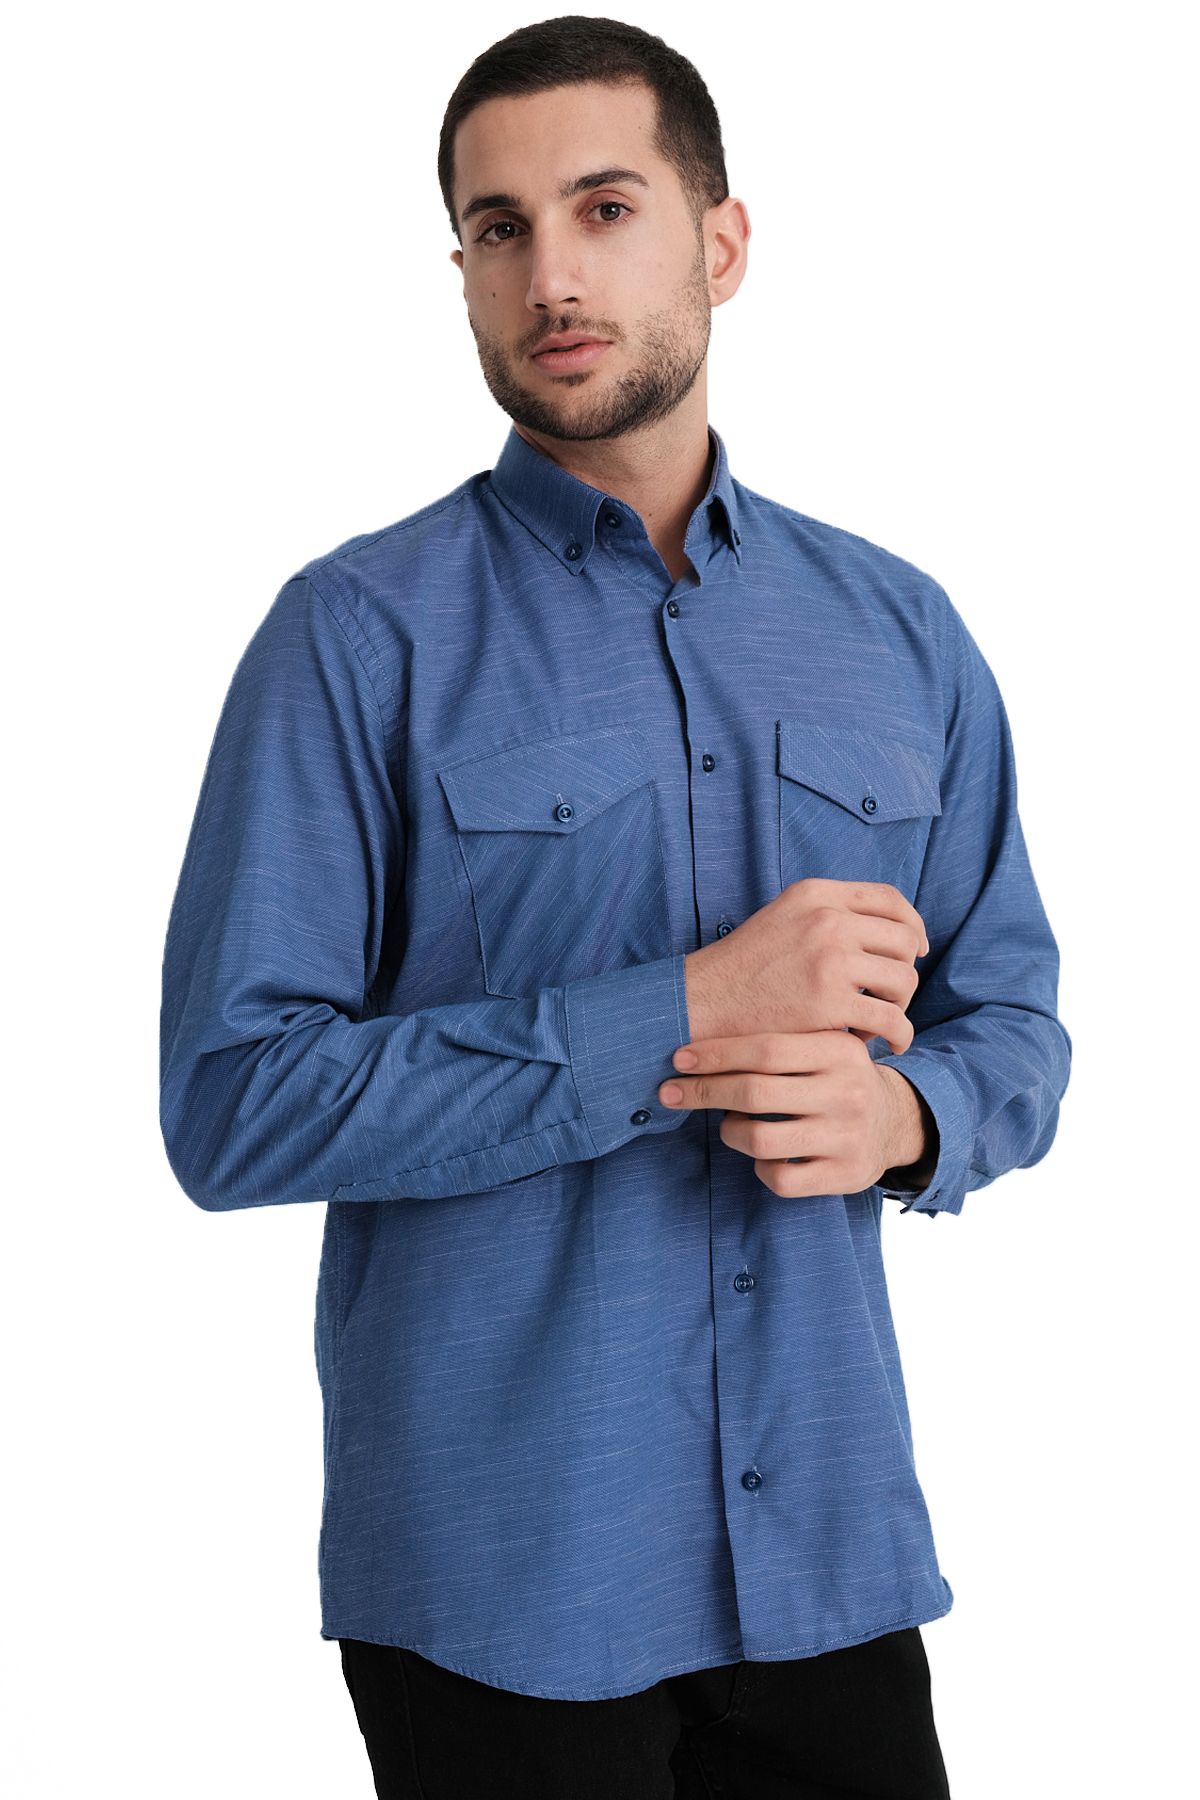 Varetta Erkek Diplomat Mavi Kapaklı Çift Cepli Düz Melanjlı Pamuklu Gömlek